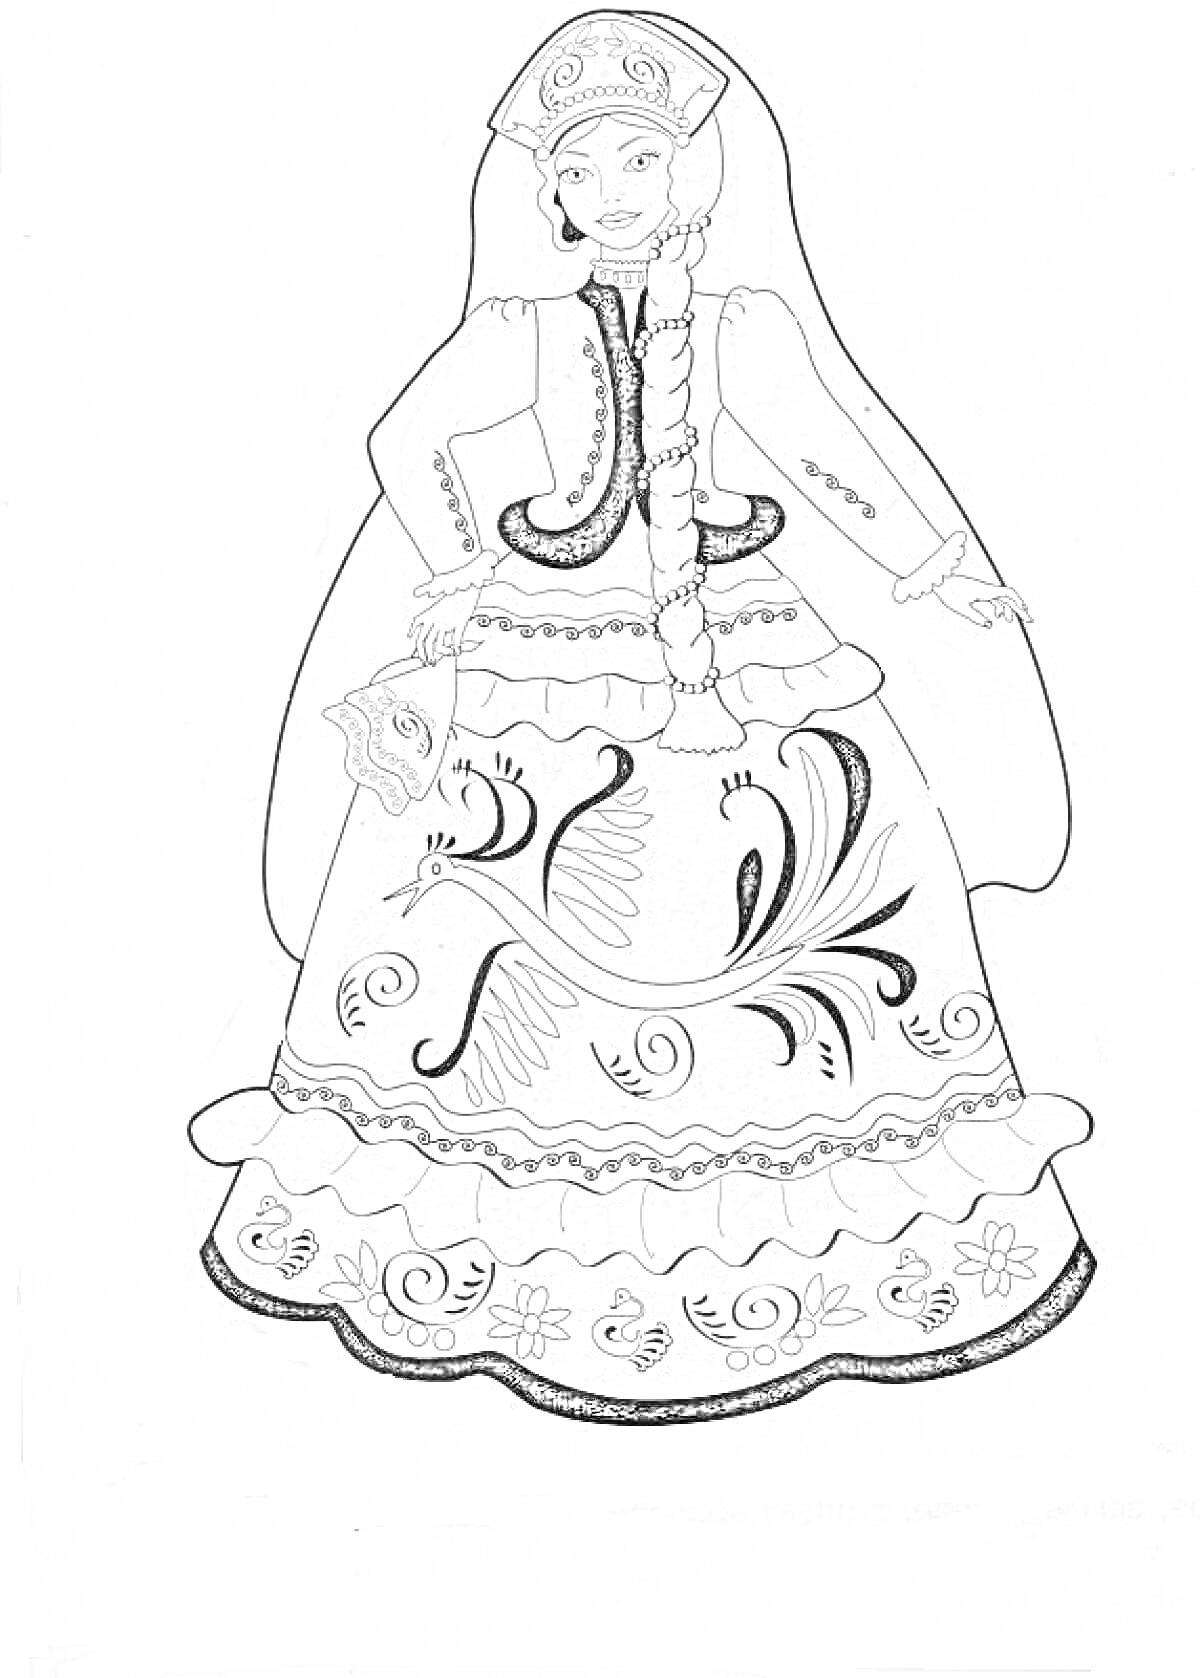 Барышня в традиционном русском костюме с узорами и кокошником